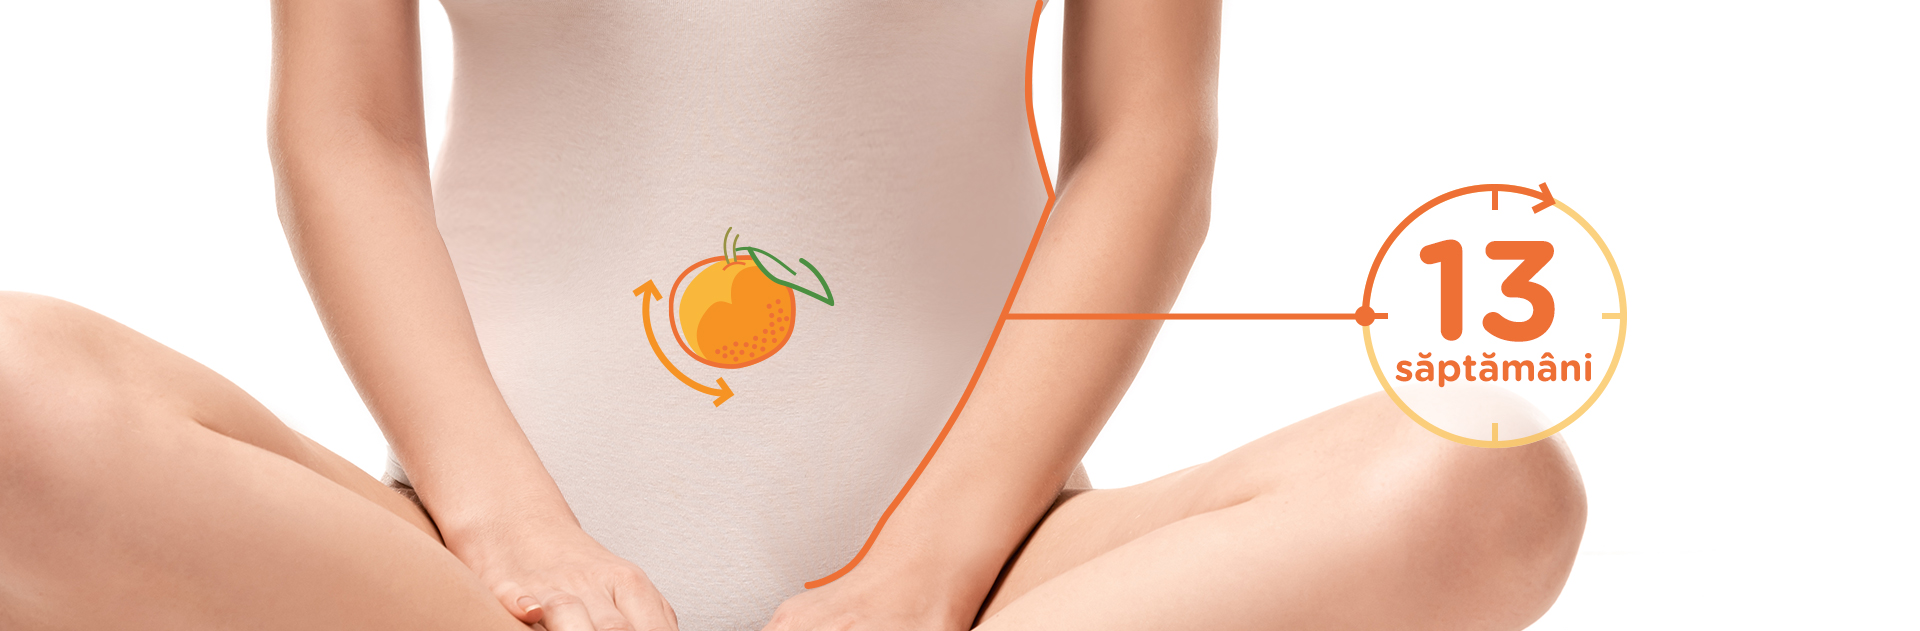 Bebelusul in Saptamana 13 de sarcina fruct: mandarina